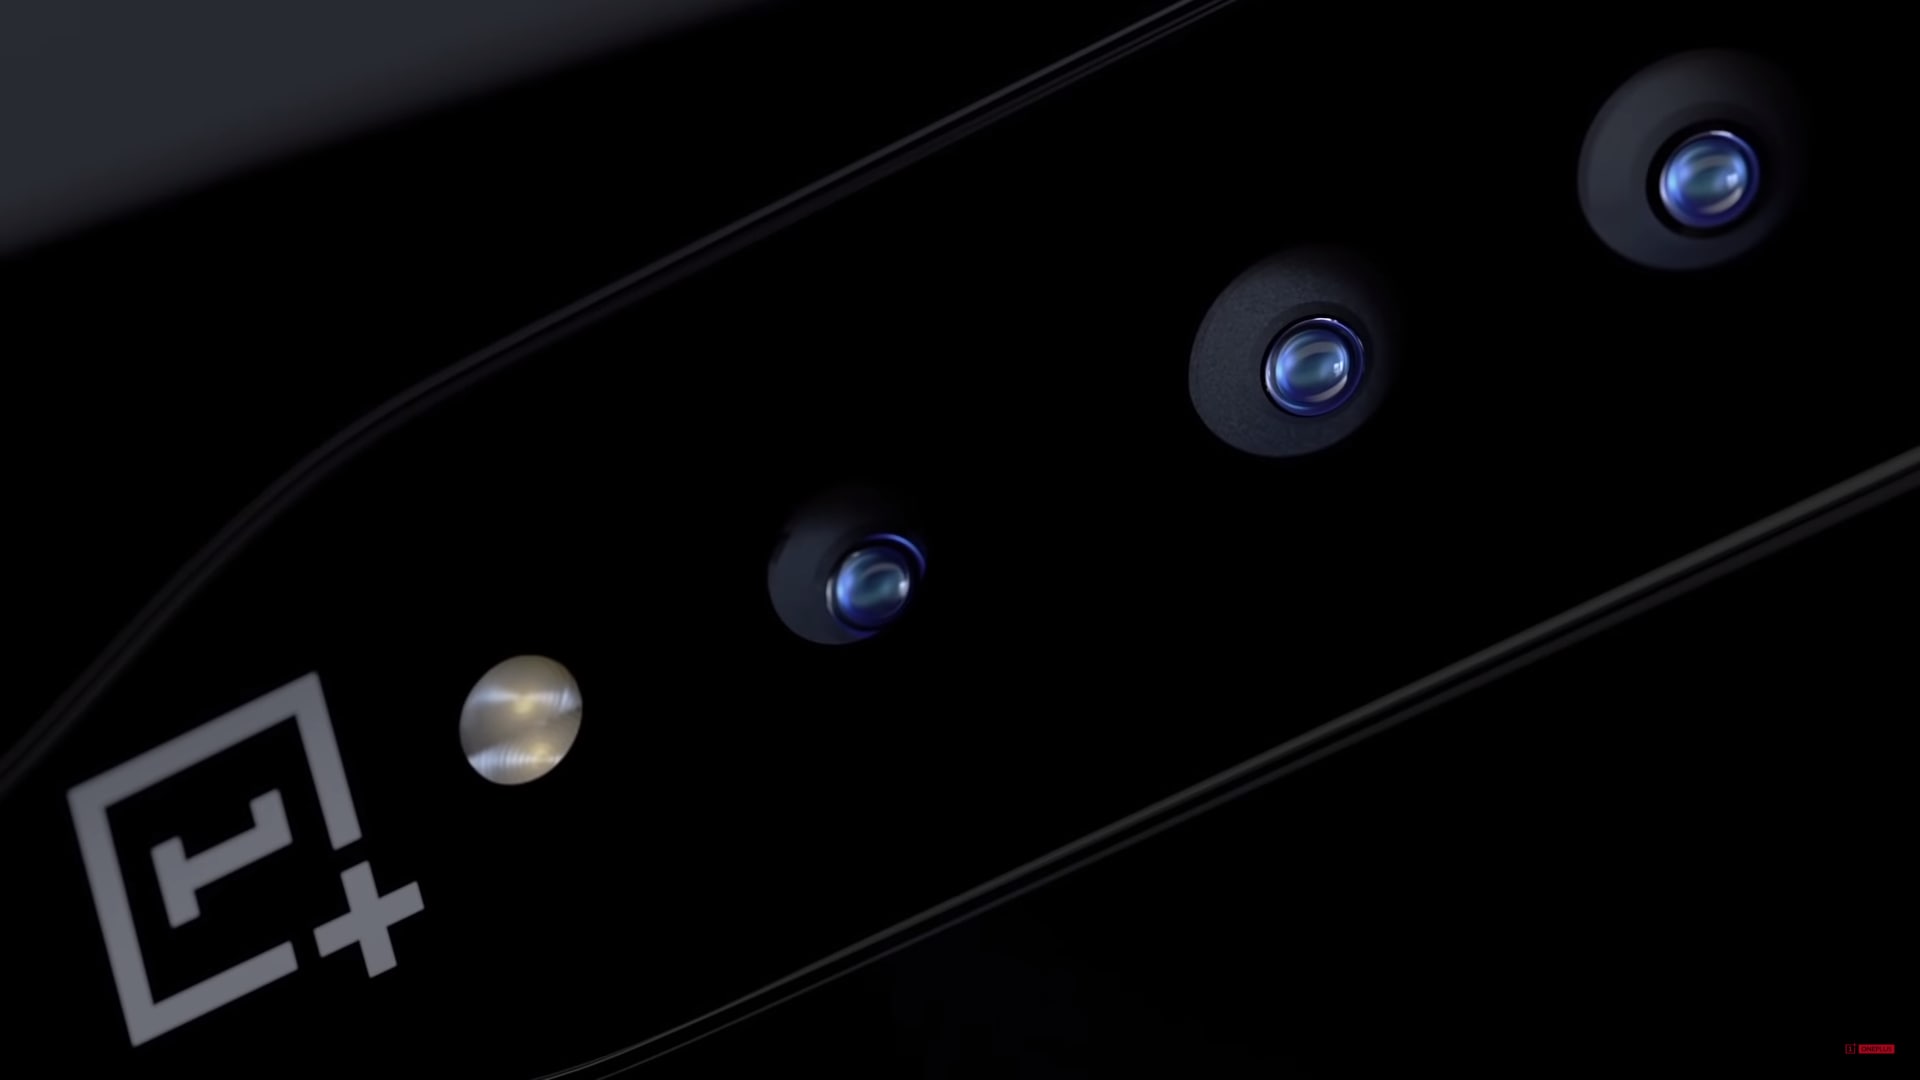 Fotocamere invisibili: ecco il segreto di OnePlus Concept One (video)